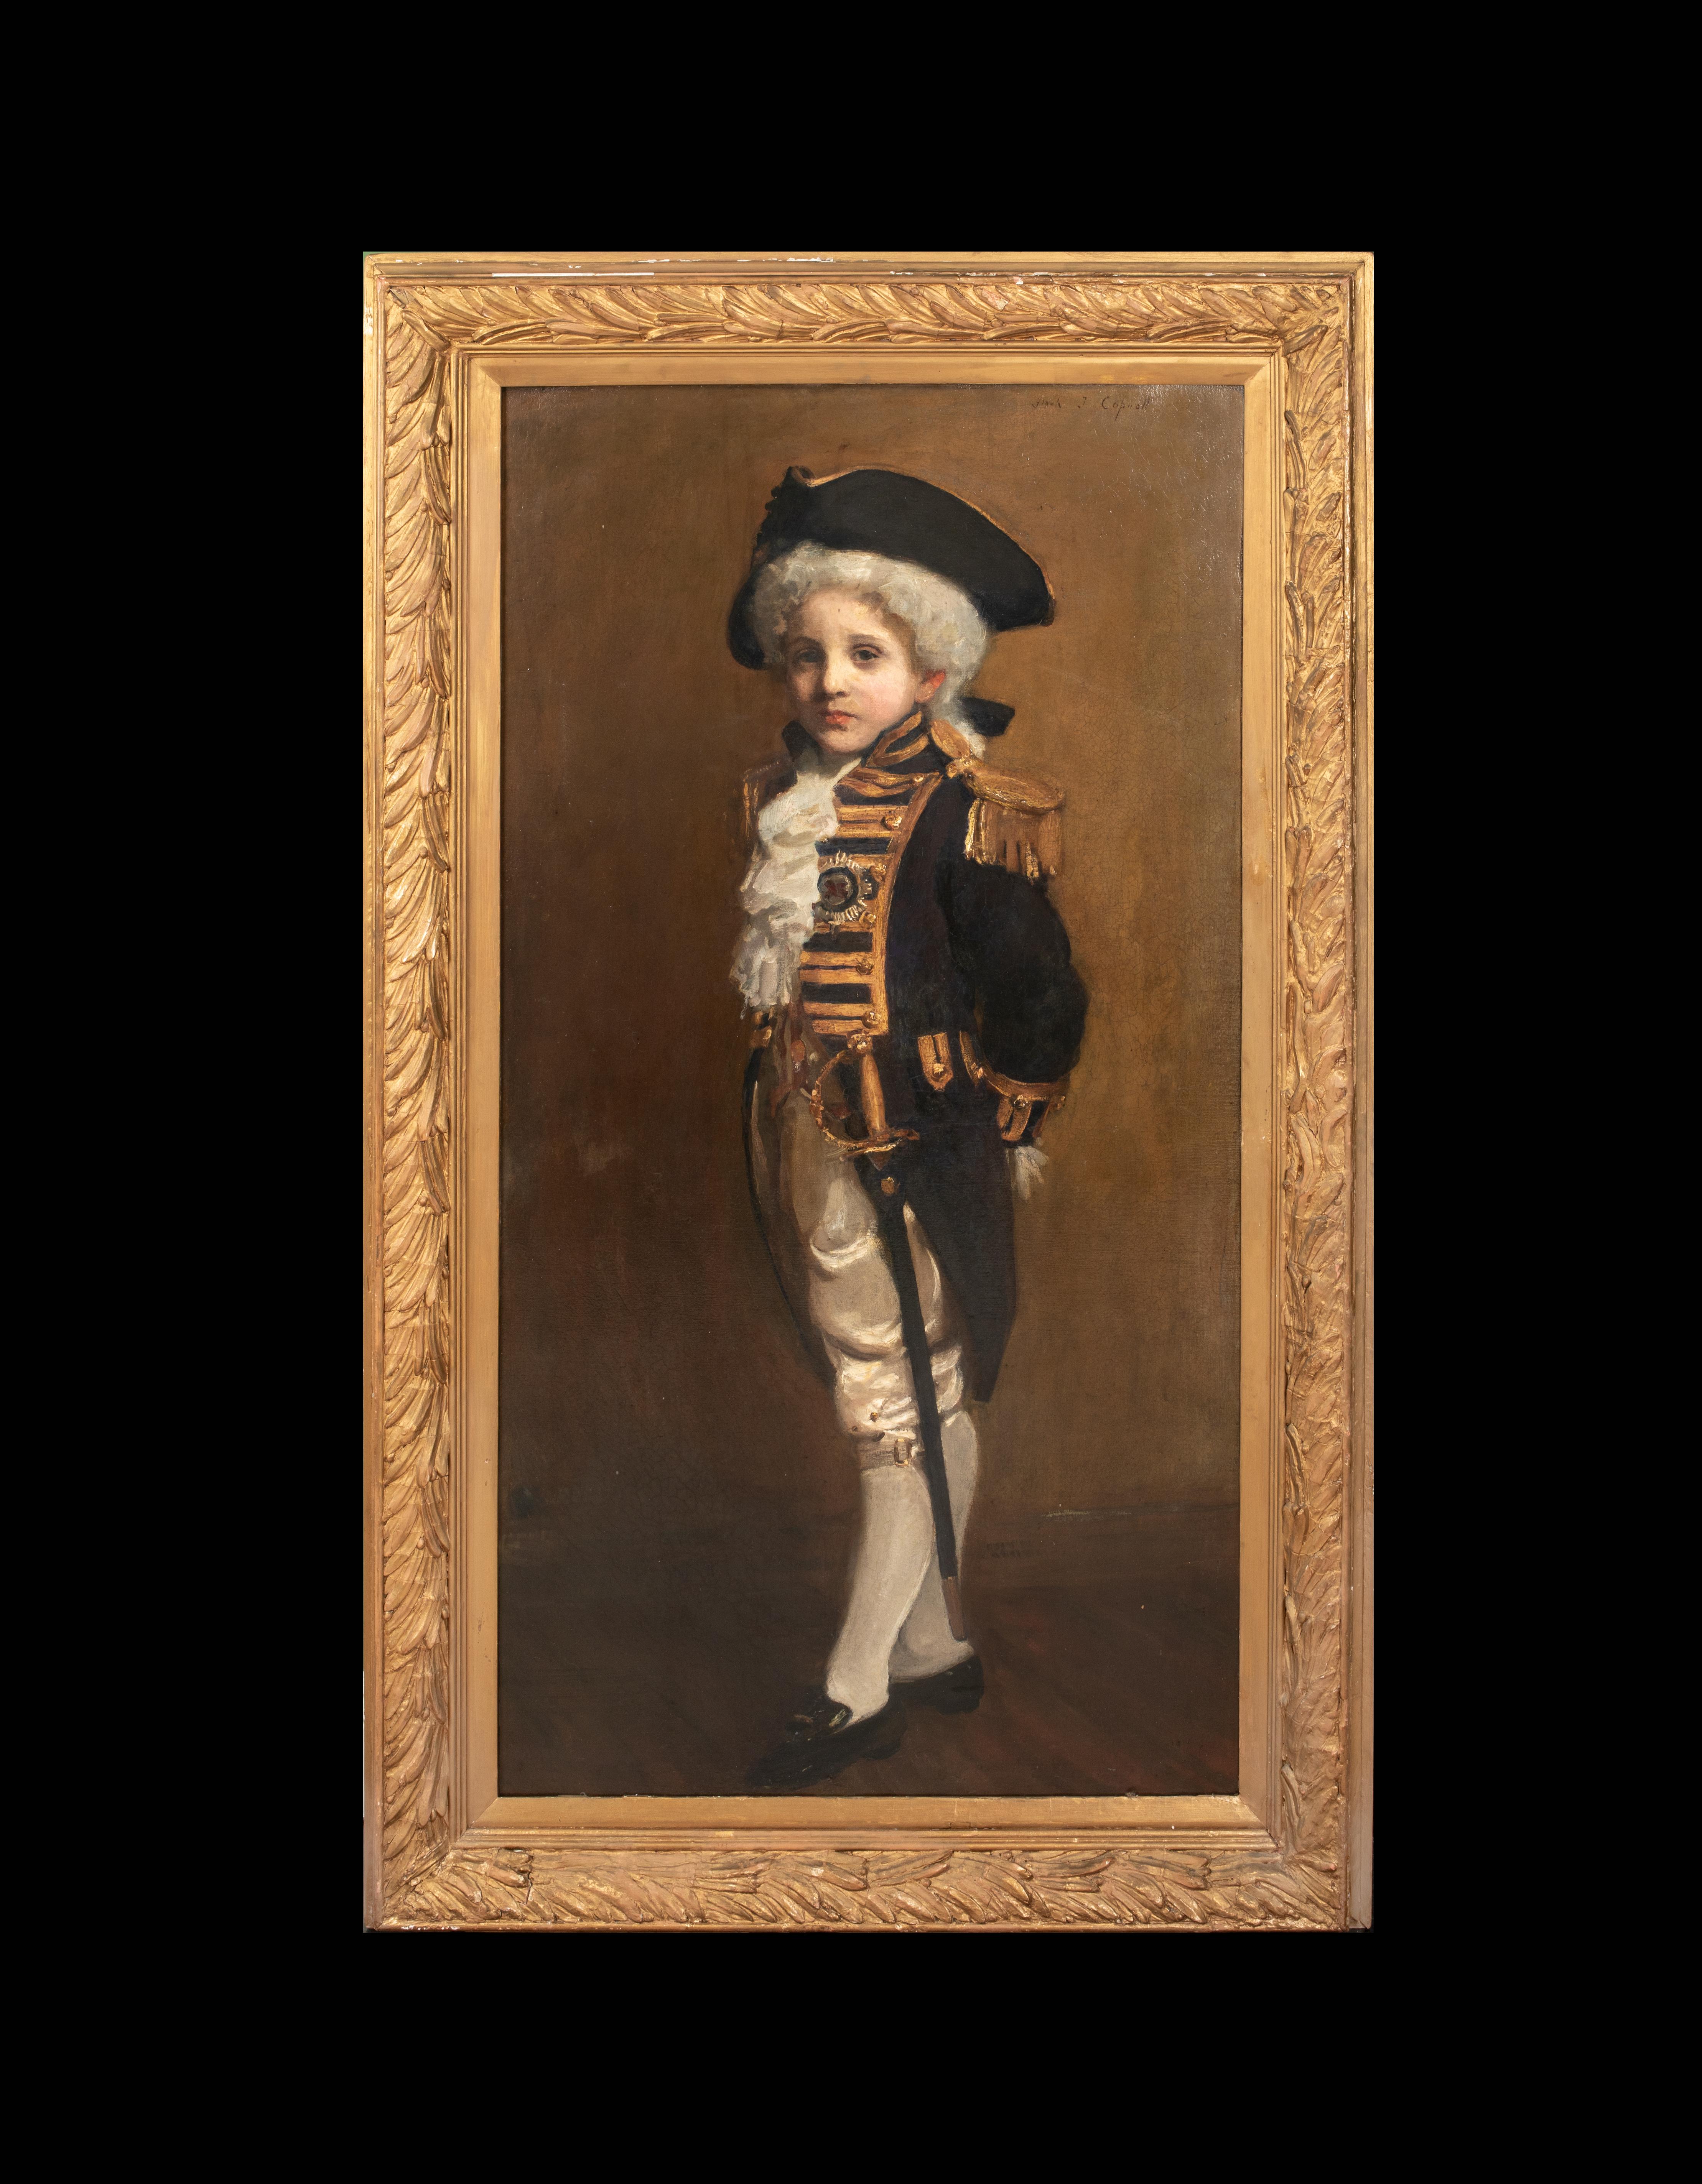  Porträt eines Kindes als Lord Nelson, 19. Jahrhundert   FRANK THOMAS COPNALL – Painting von Unknown